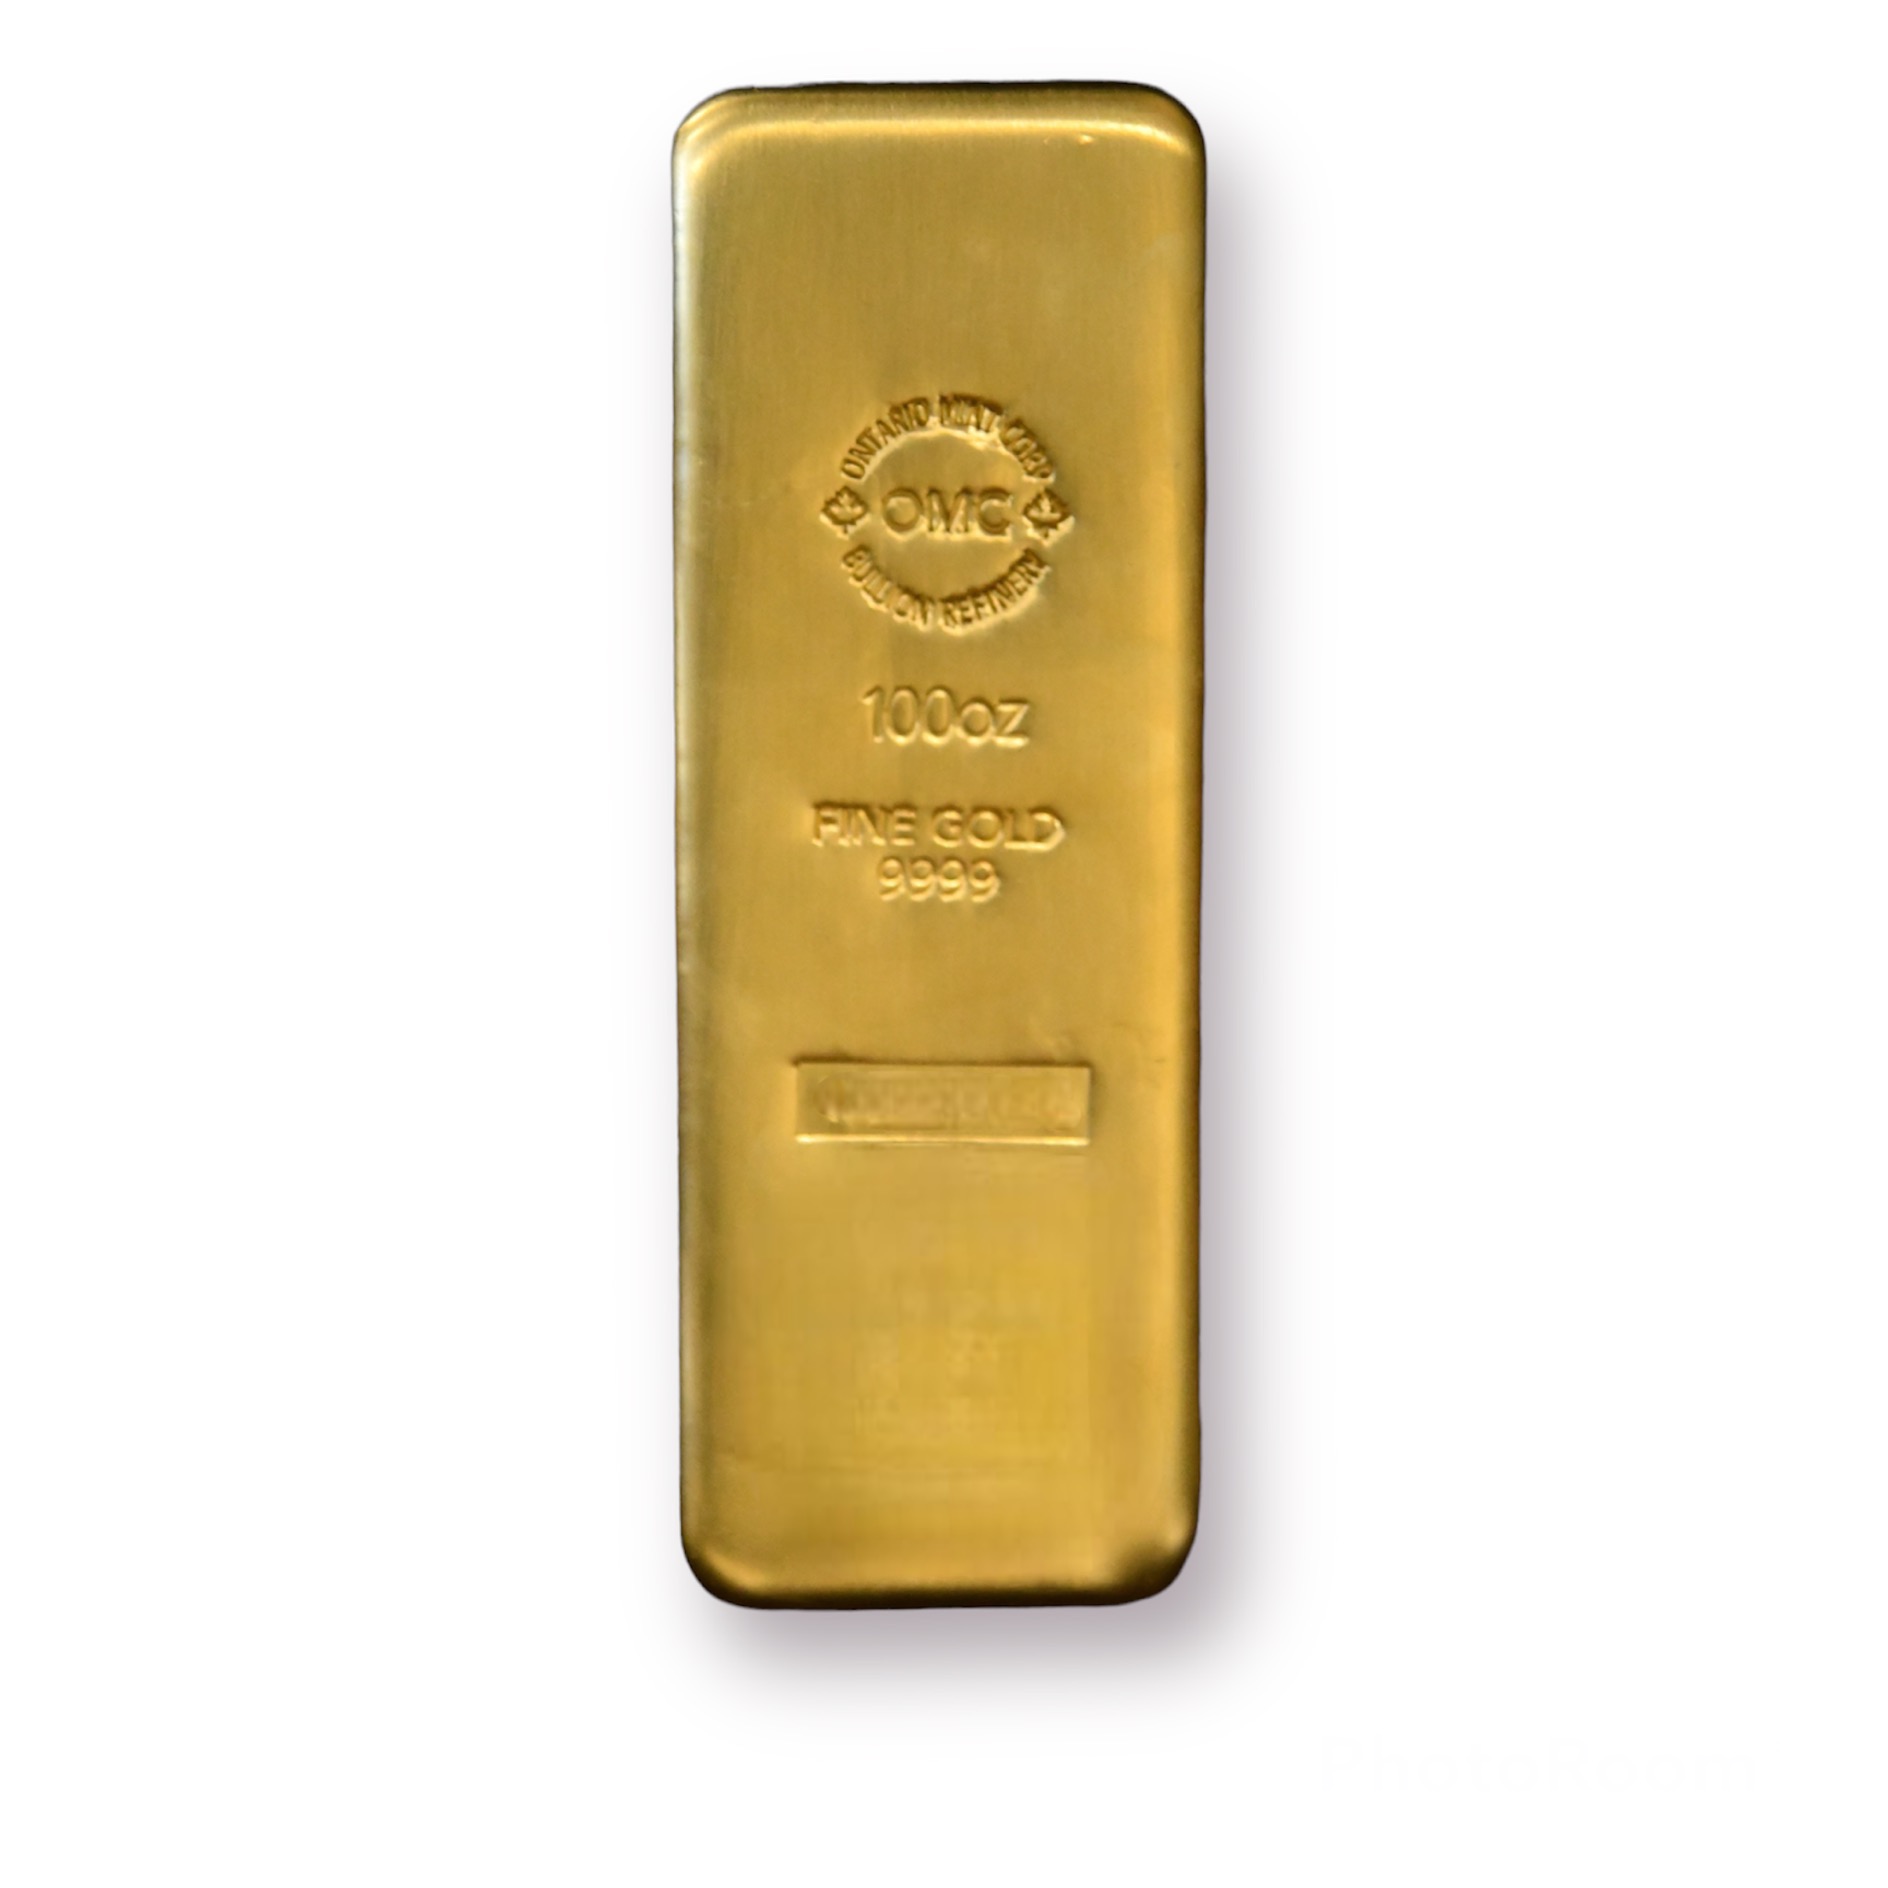 100oz Gold bar (99.99%)